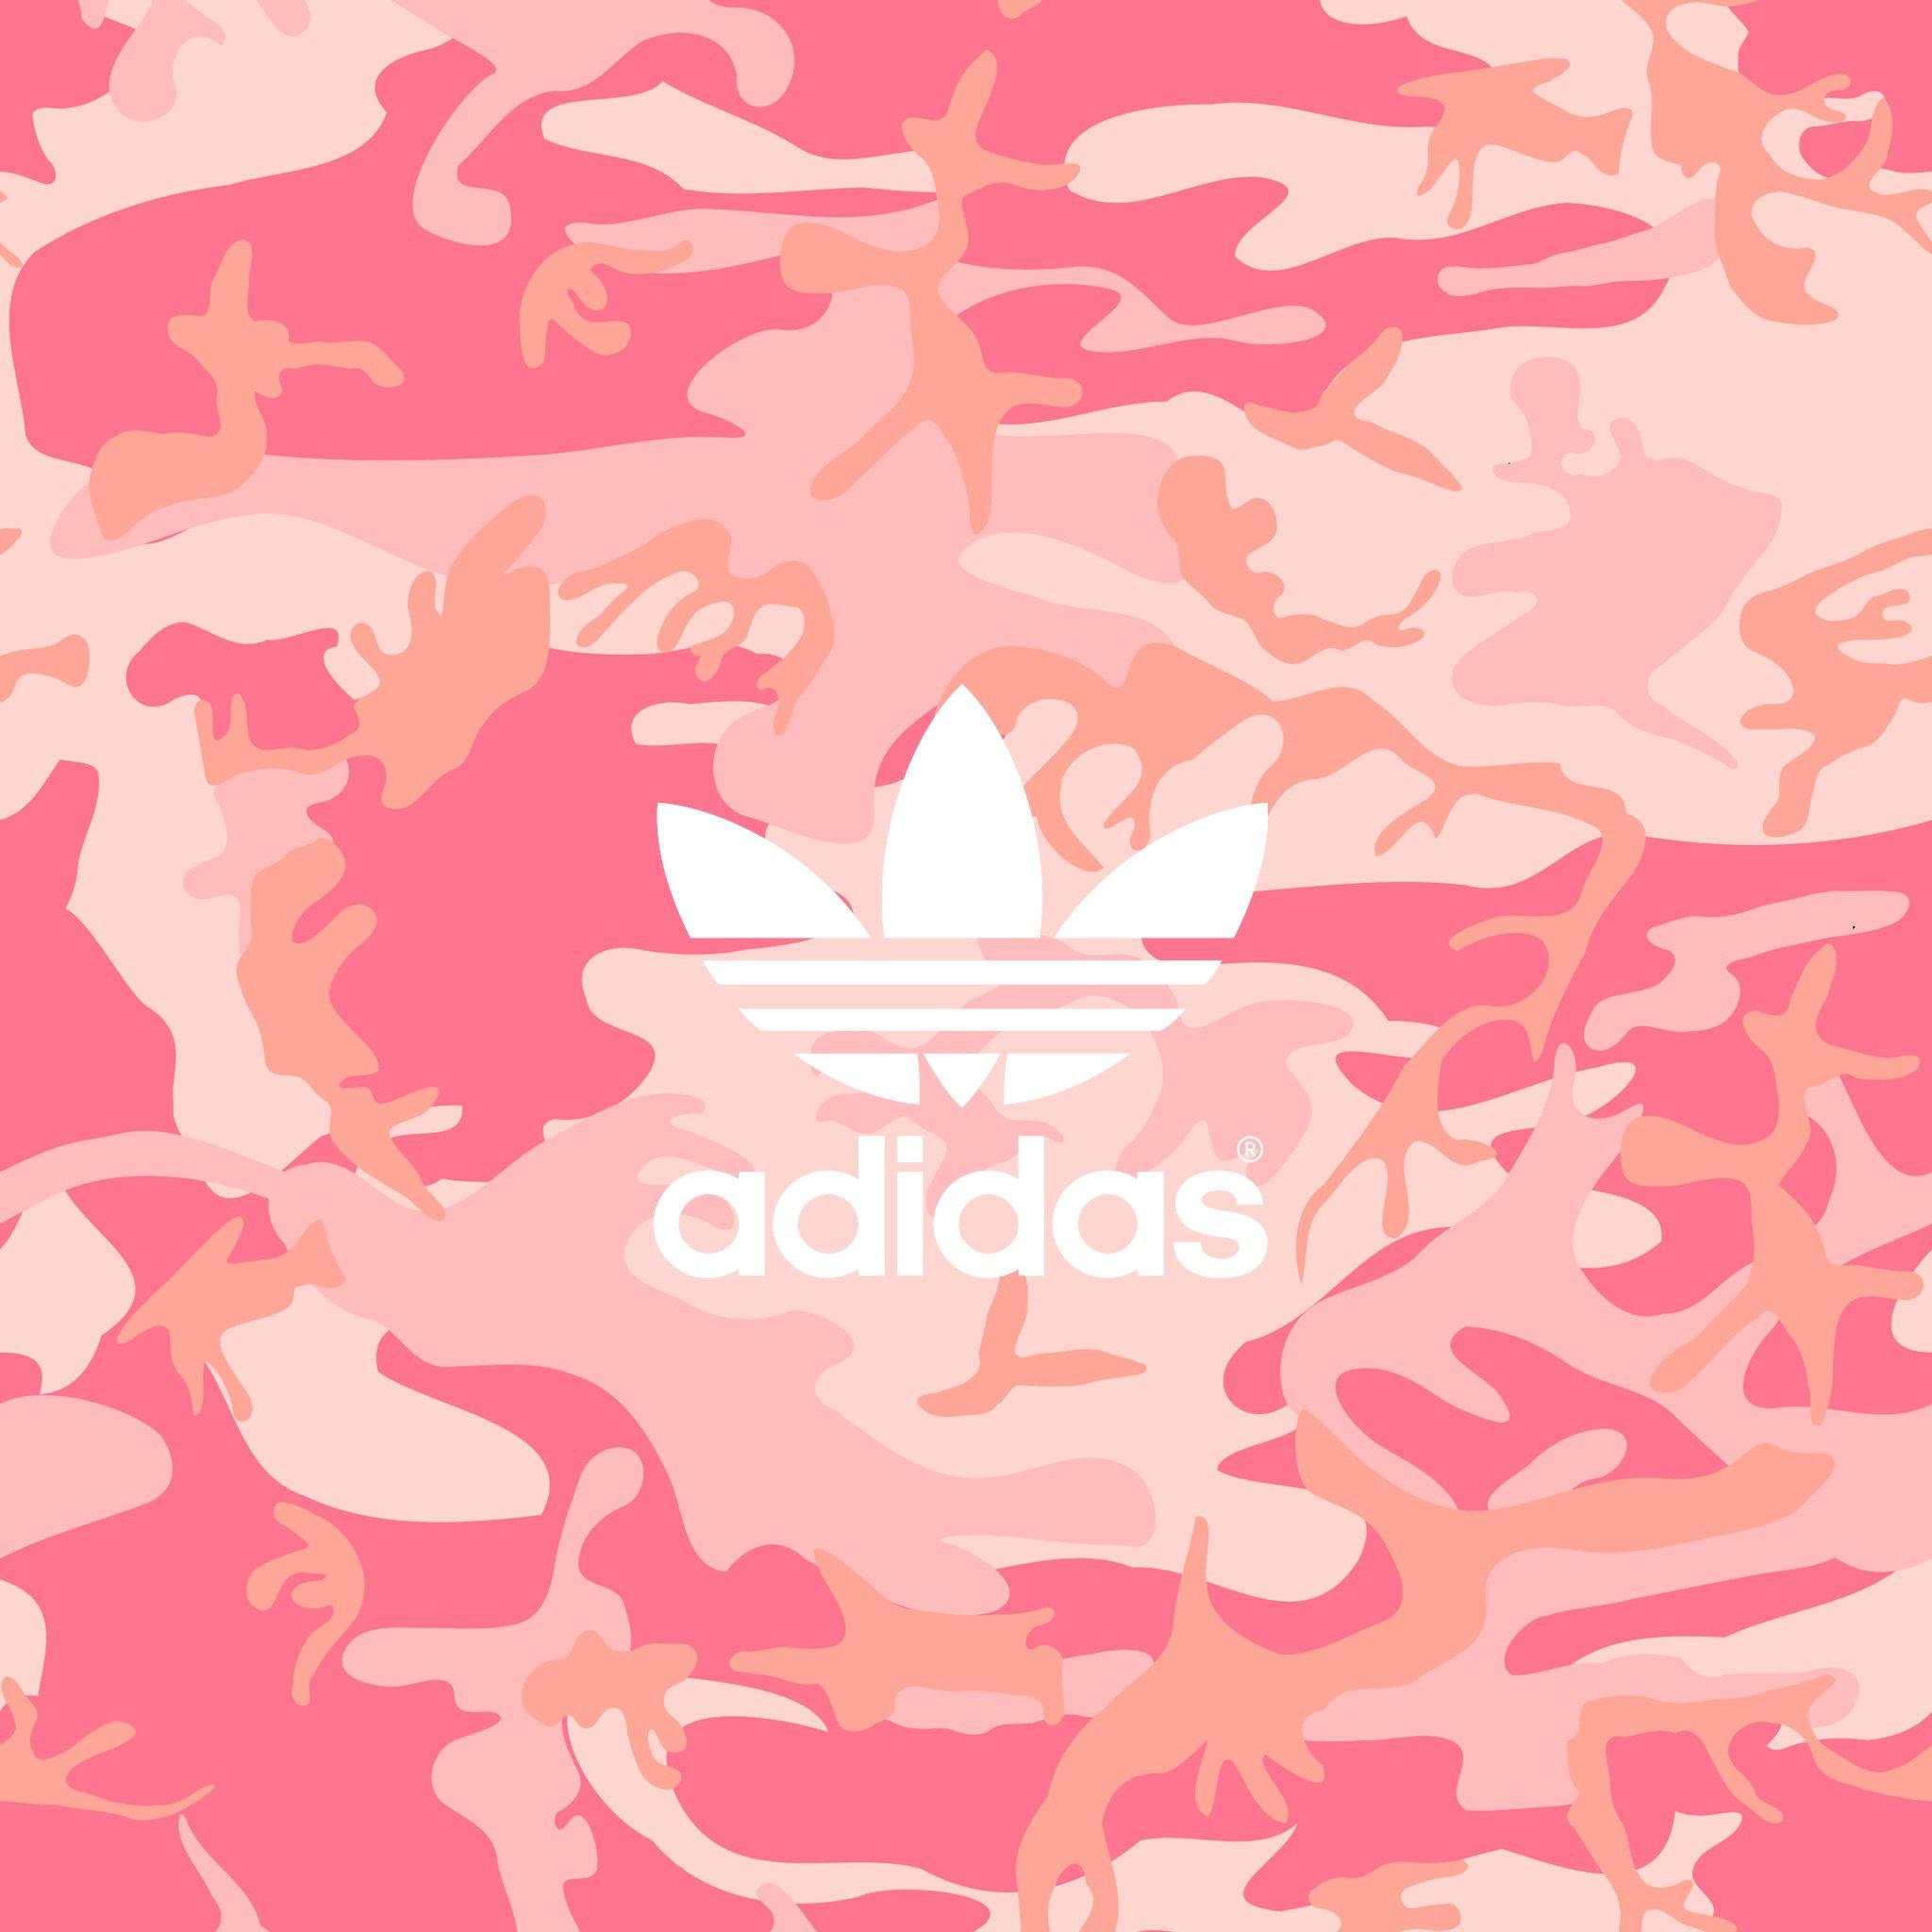 logo adidas pink